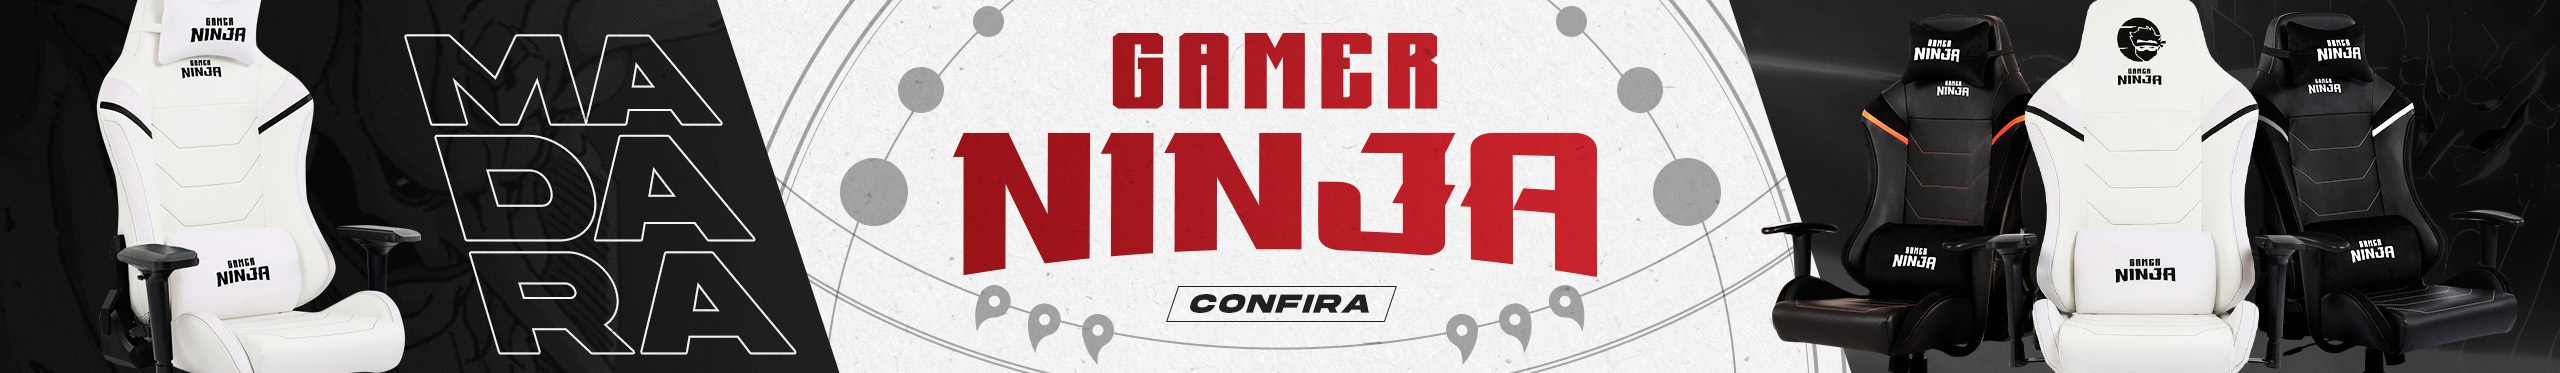 Cadeira Gamer Ninja Madara | O conforto definitivo. Saiba mais!